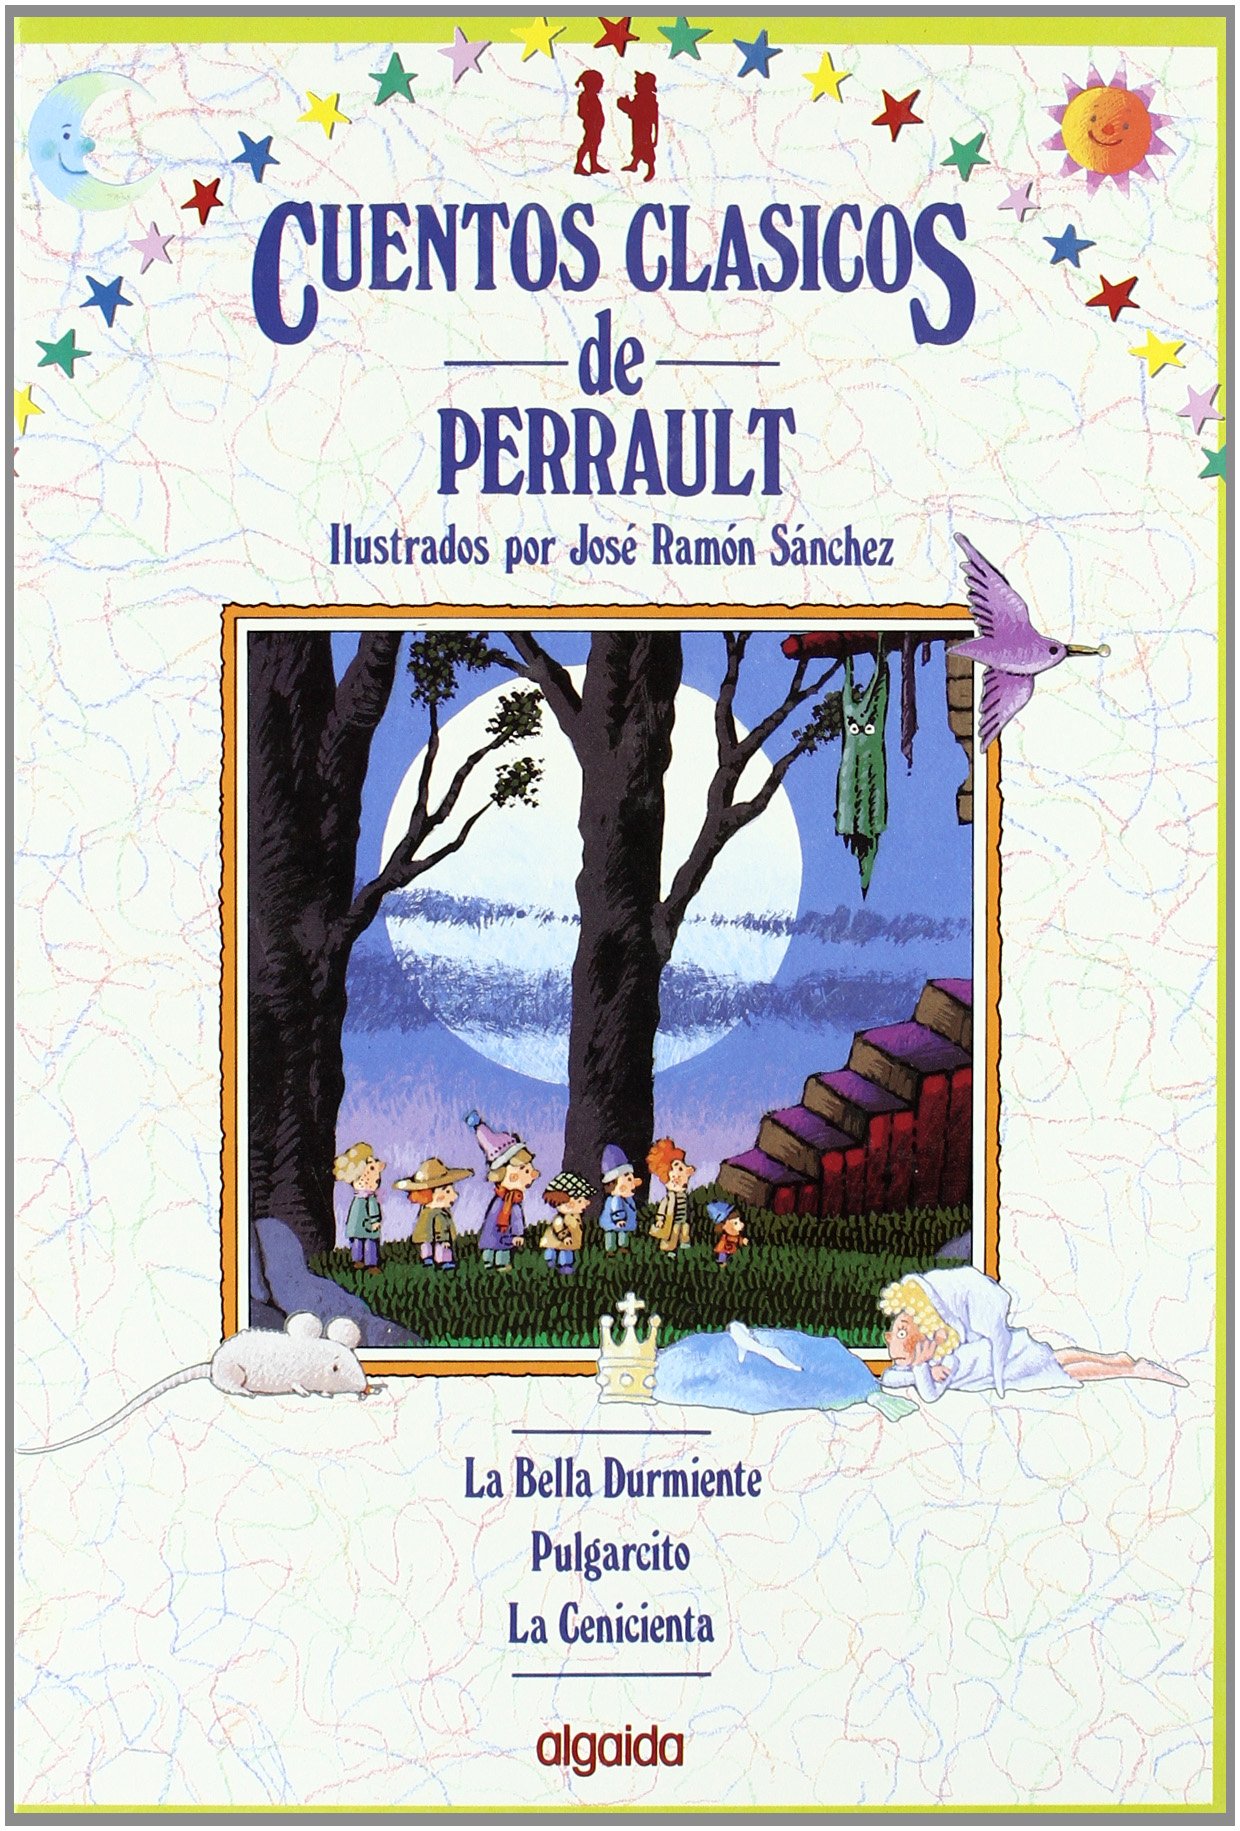 Libro: Cuentos clásicos de Perrault: La bella durmiente, Pulgarcito y La cenicienta por José Ramón Sánchez